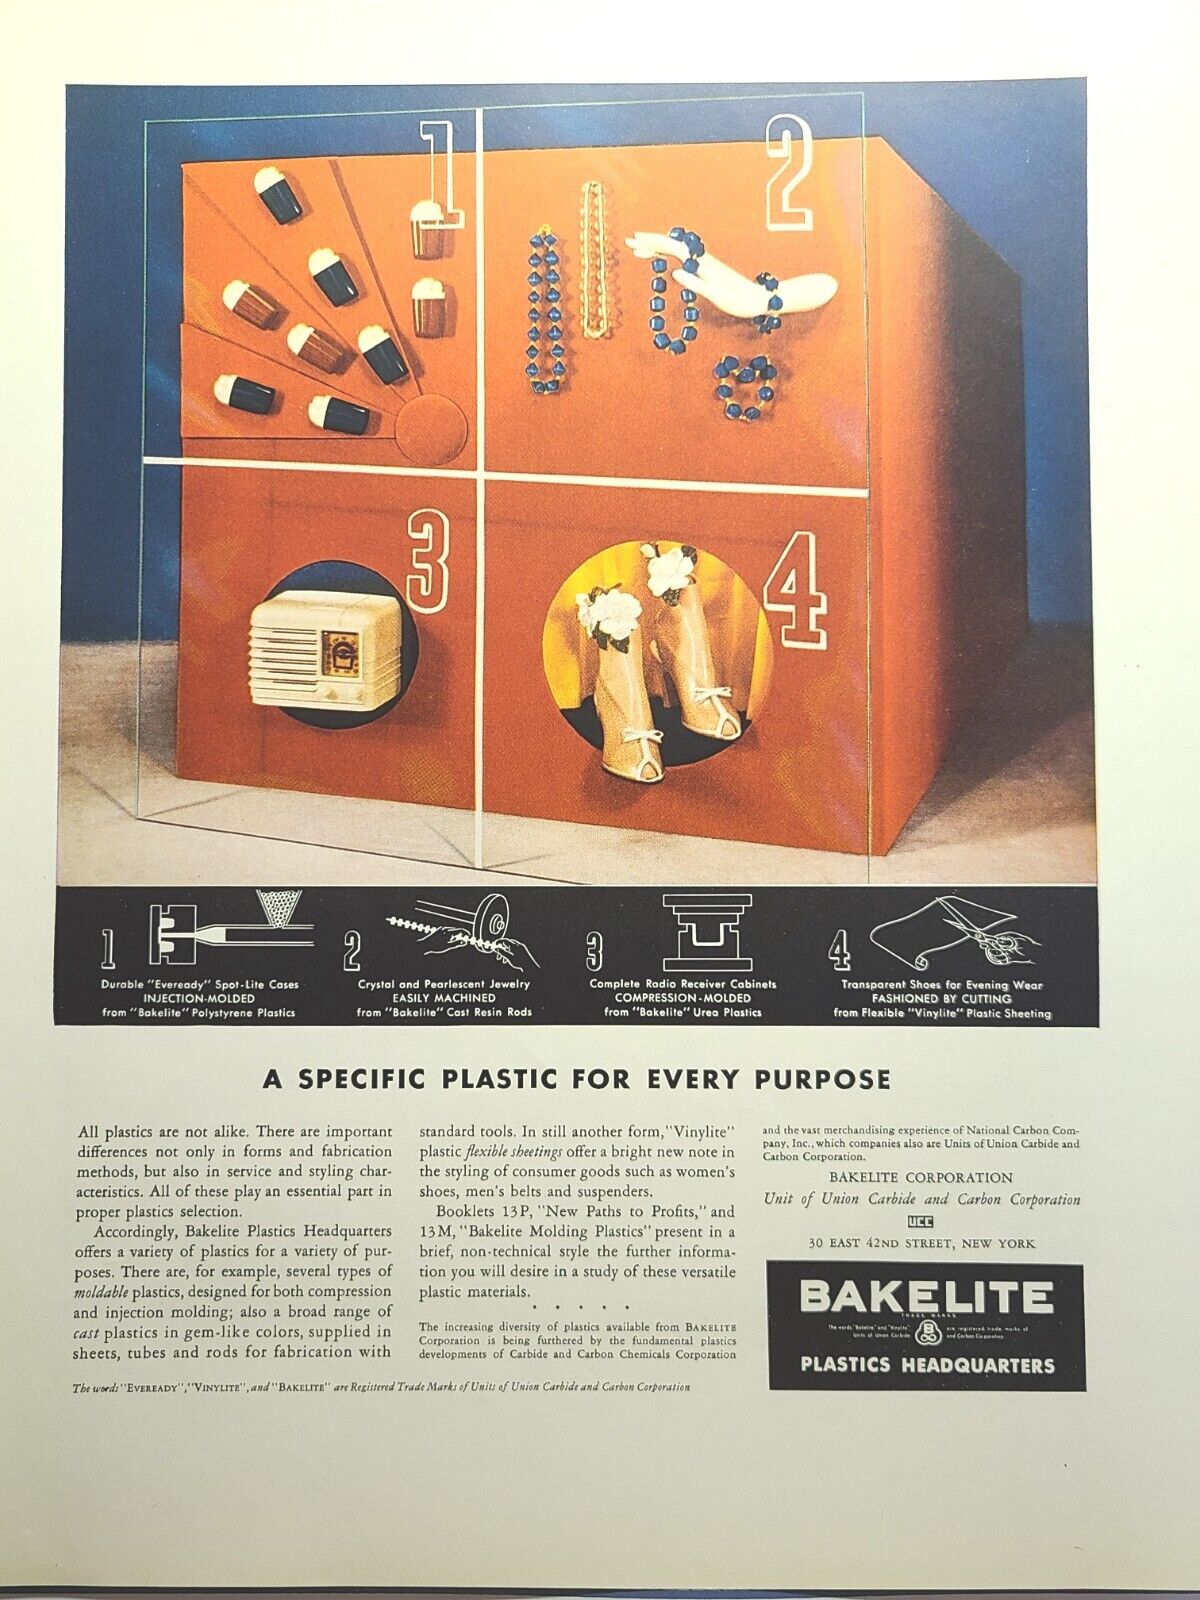 Bakelite Plastics Headquarters Colorful Molded Products Vintage Print Ad 1941